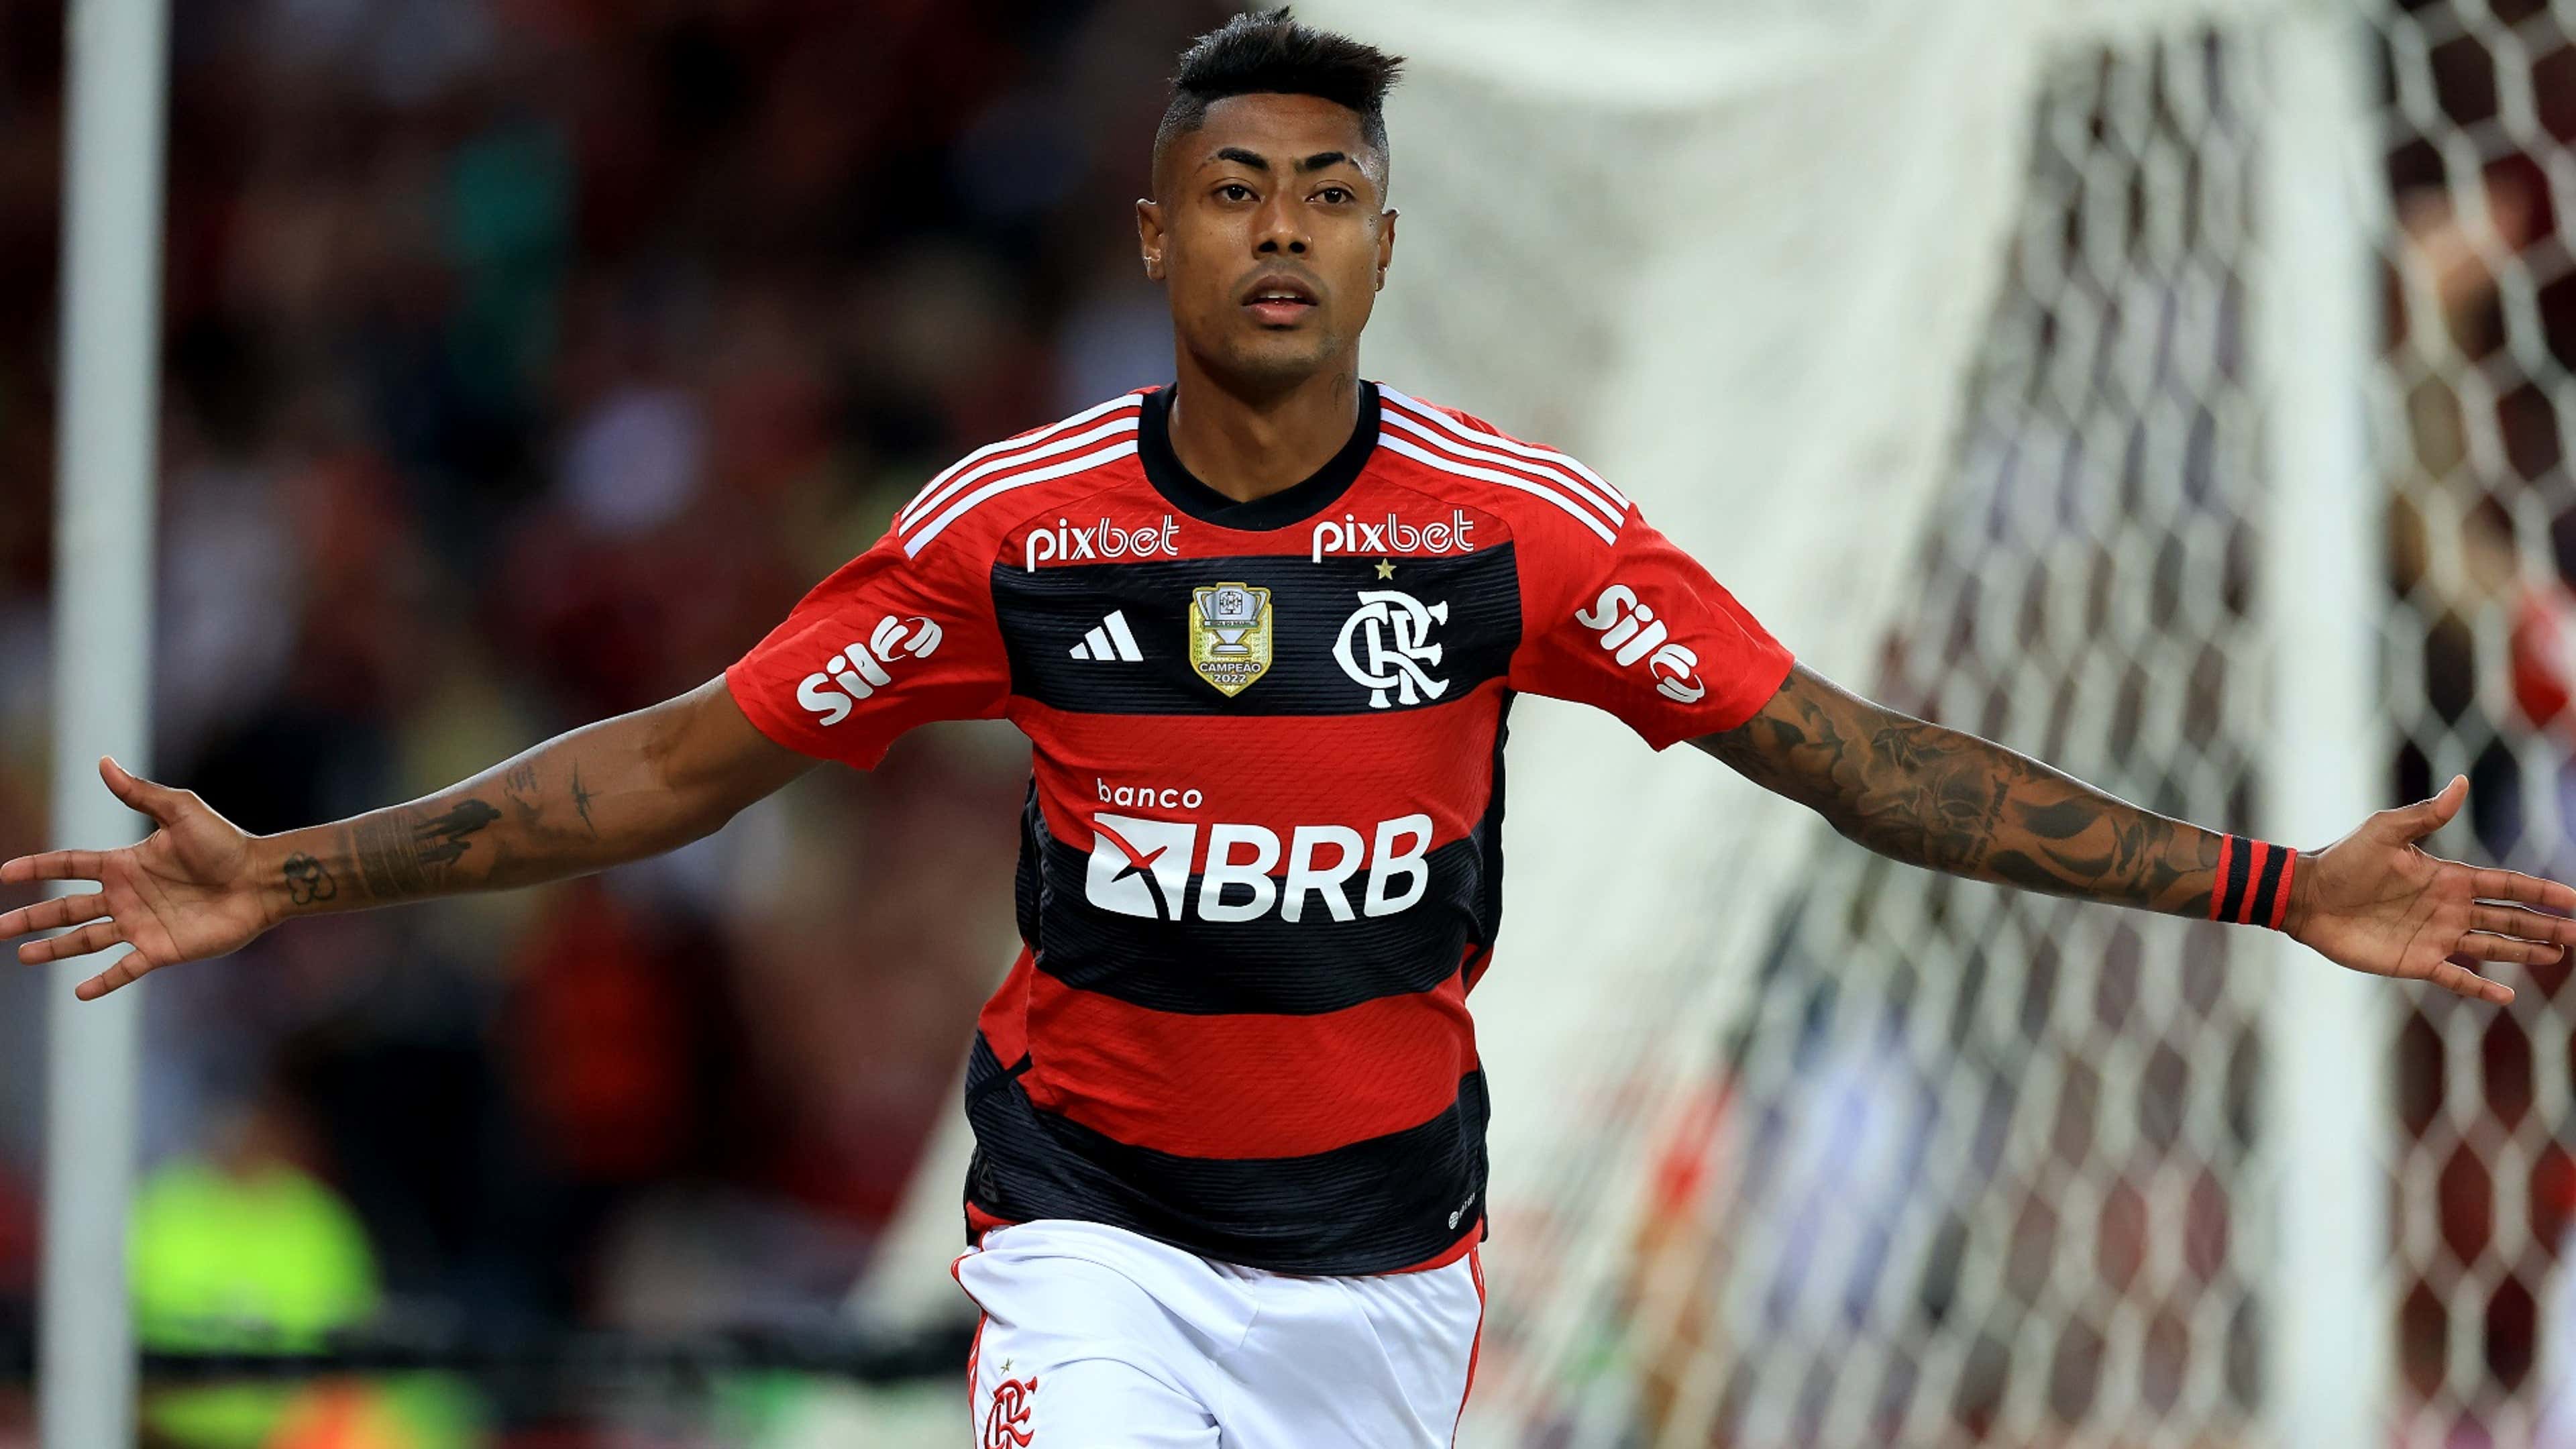 Flamengo vai jogar no Kleber Andrade contra o Athletico-PR - Em Dia ES